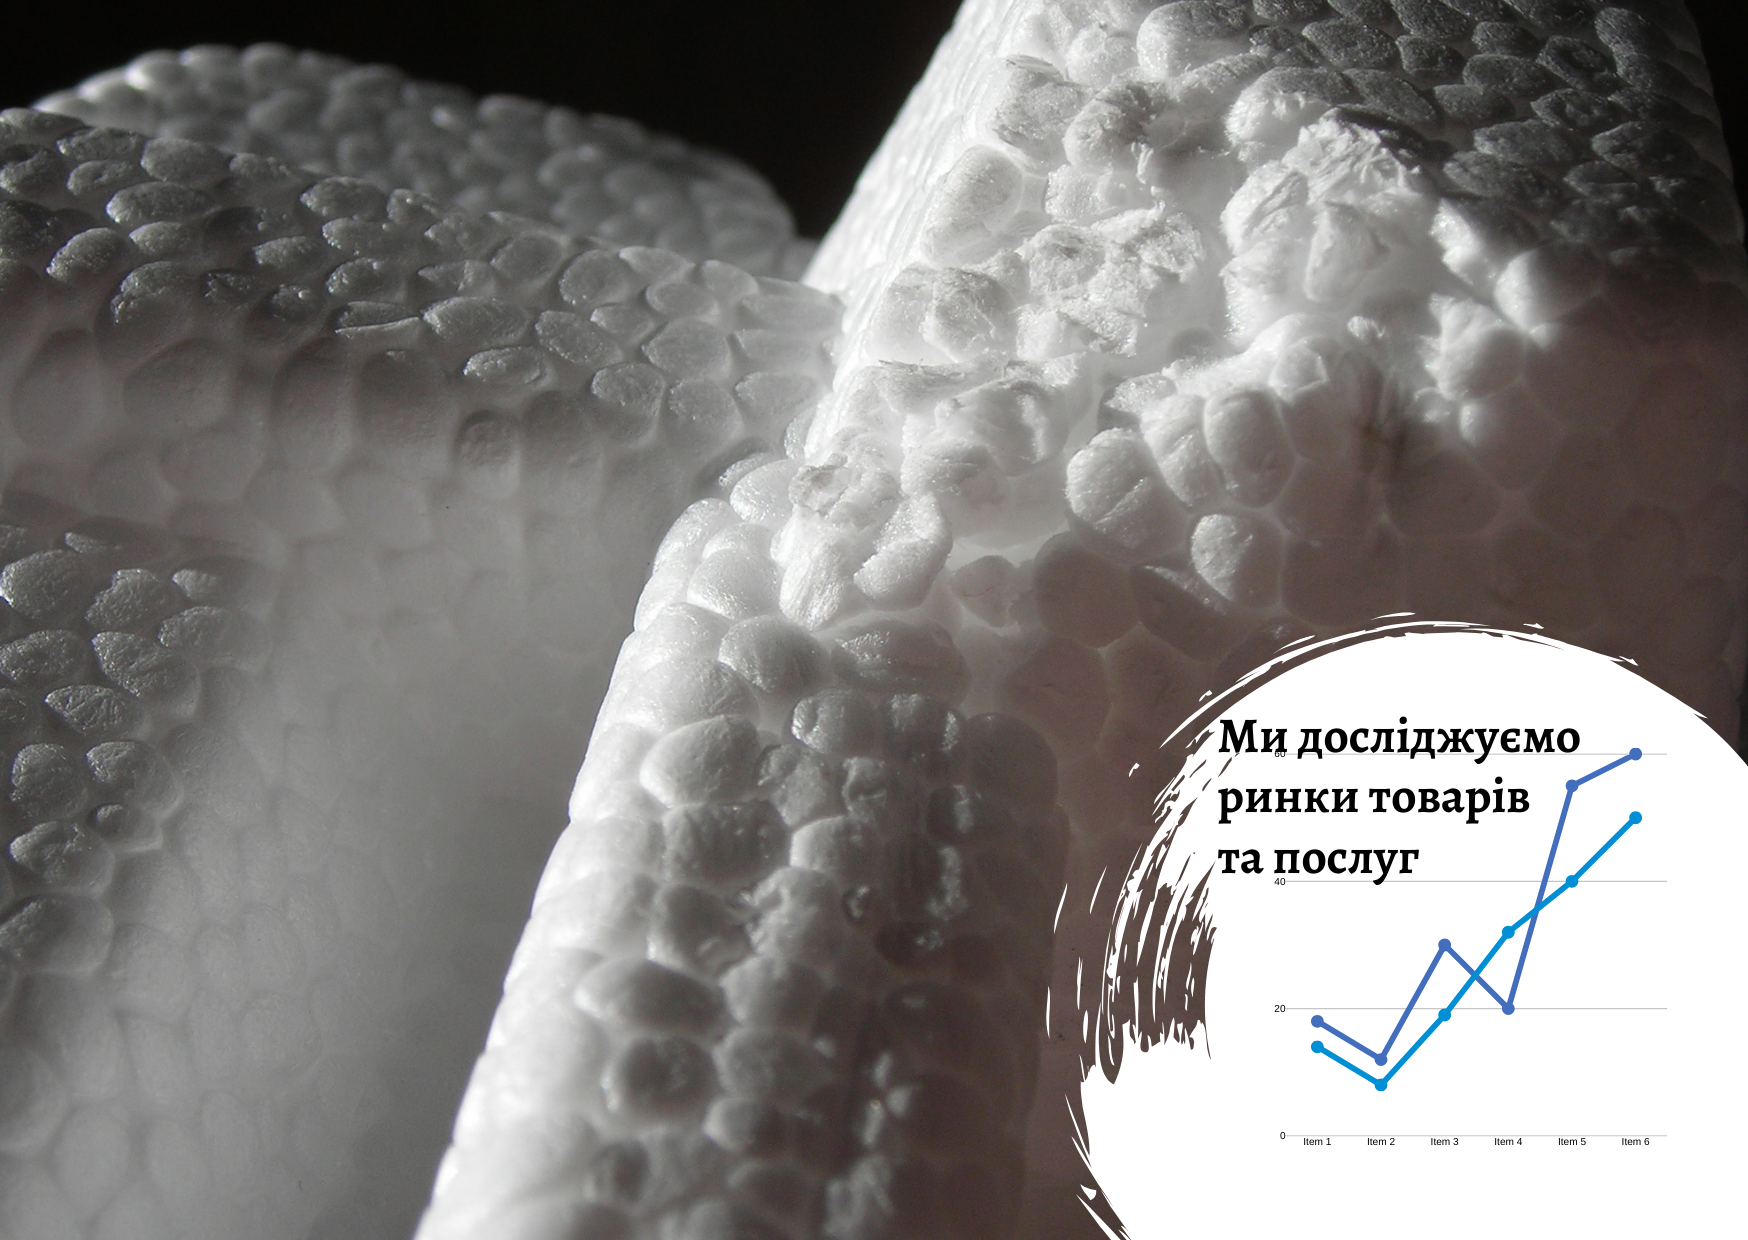 Ukrainian polystyrene foam market research report 